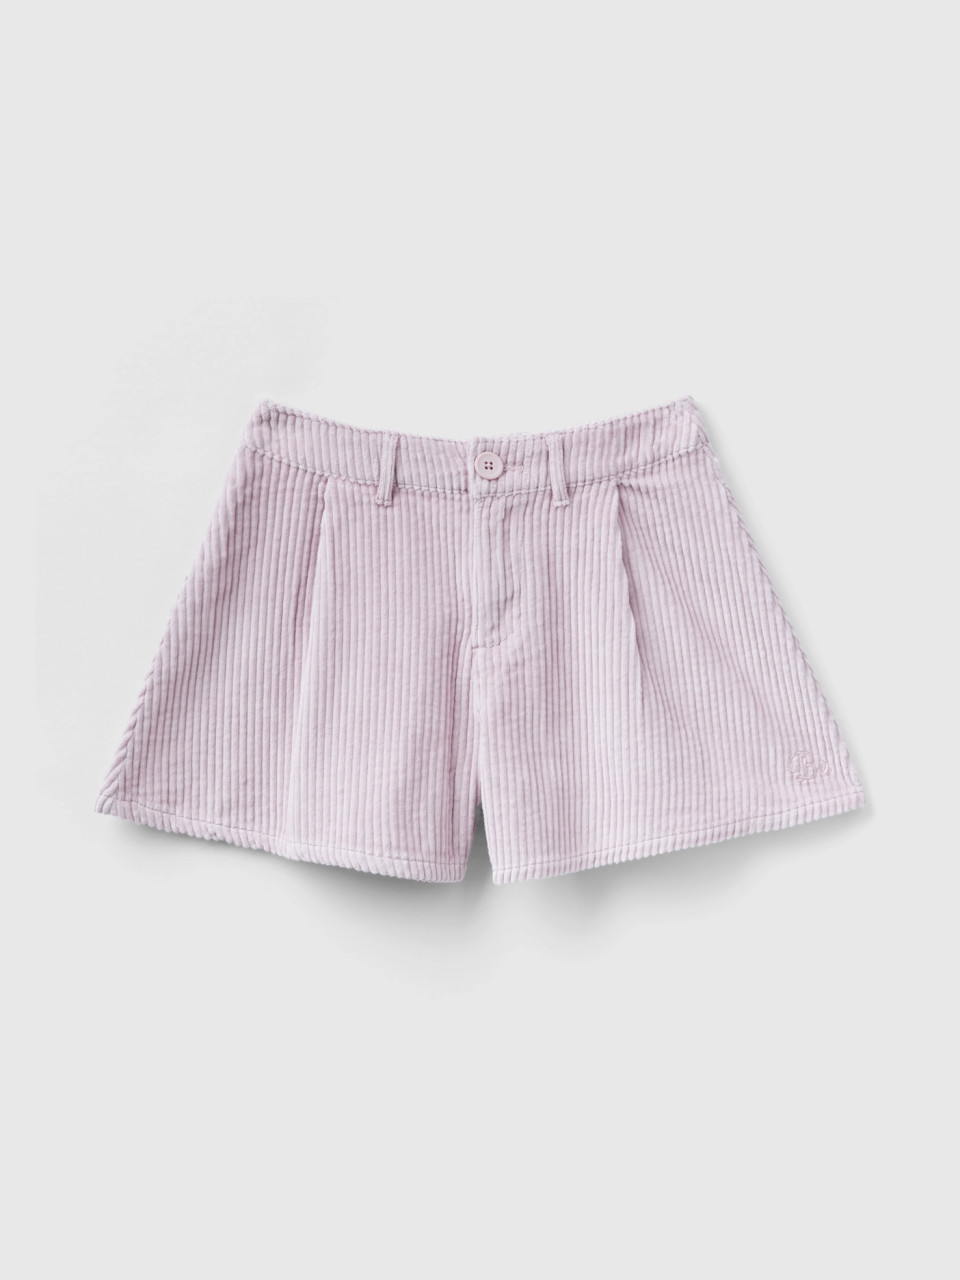 Benetton, Corduroy Bermuda Shorts, Pink, Kids